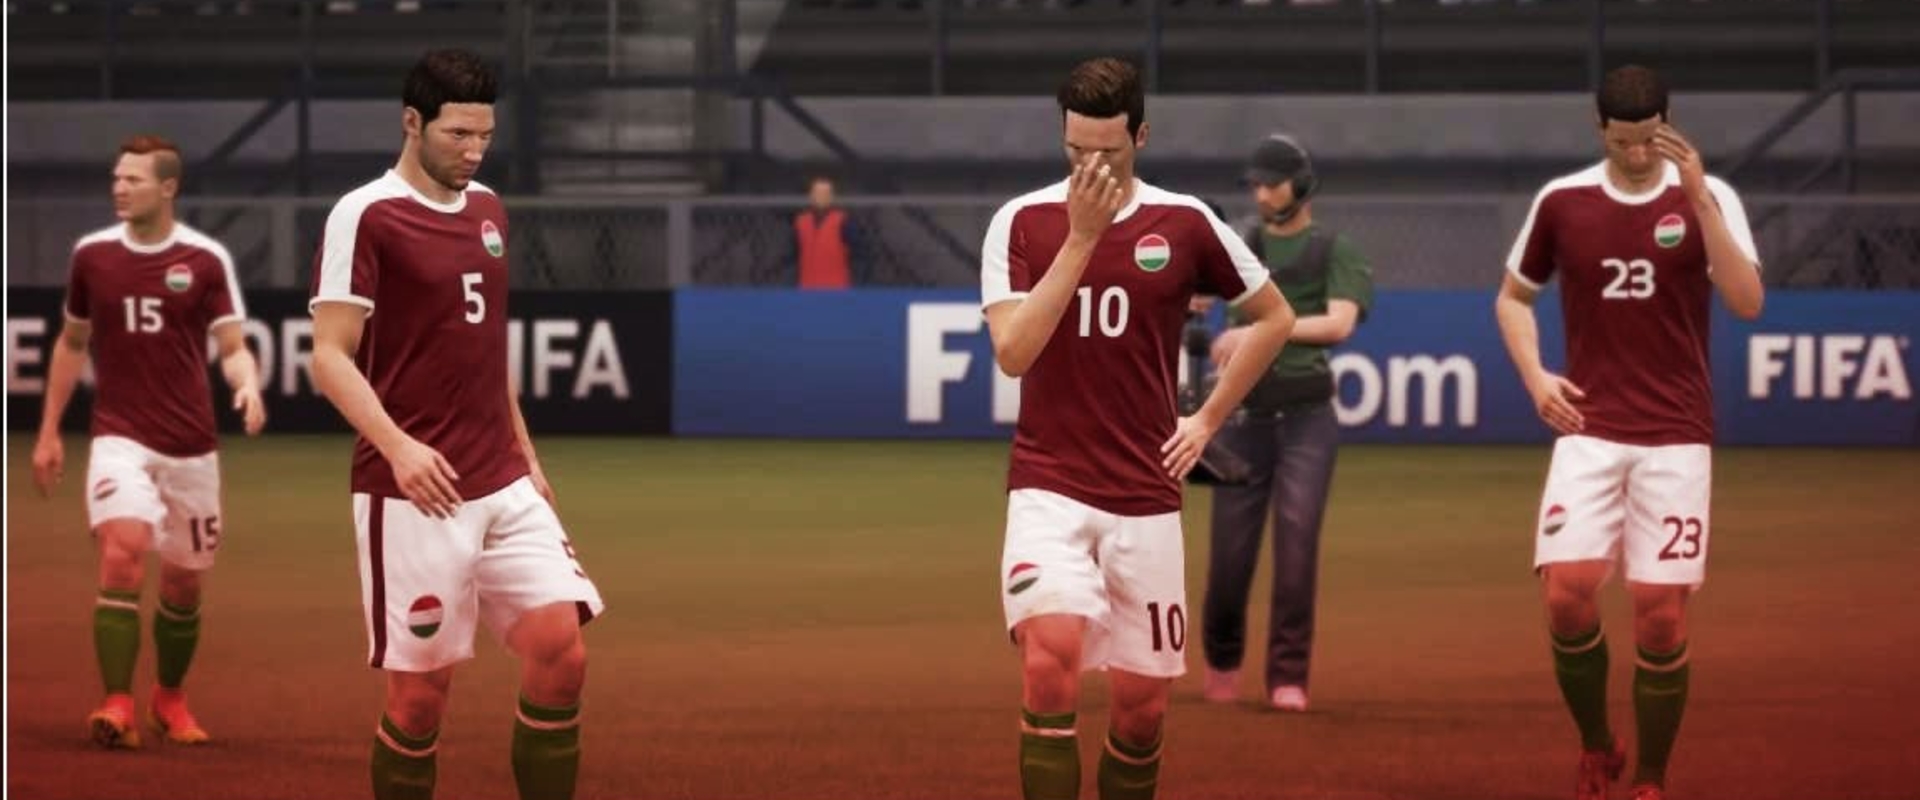 FIFA17 VB: Belgium átgázolt Magyarországon az első fordulóban